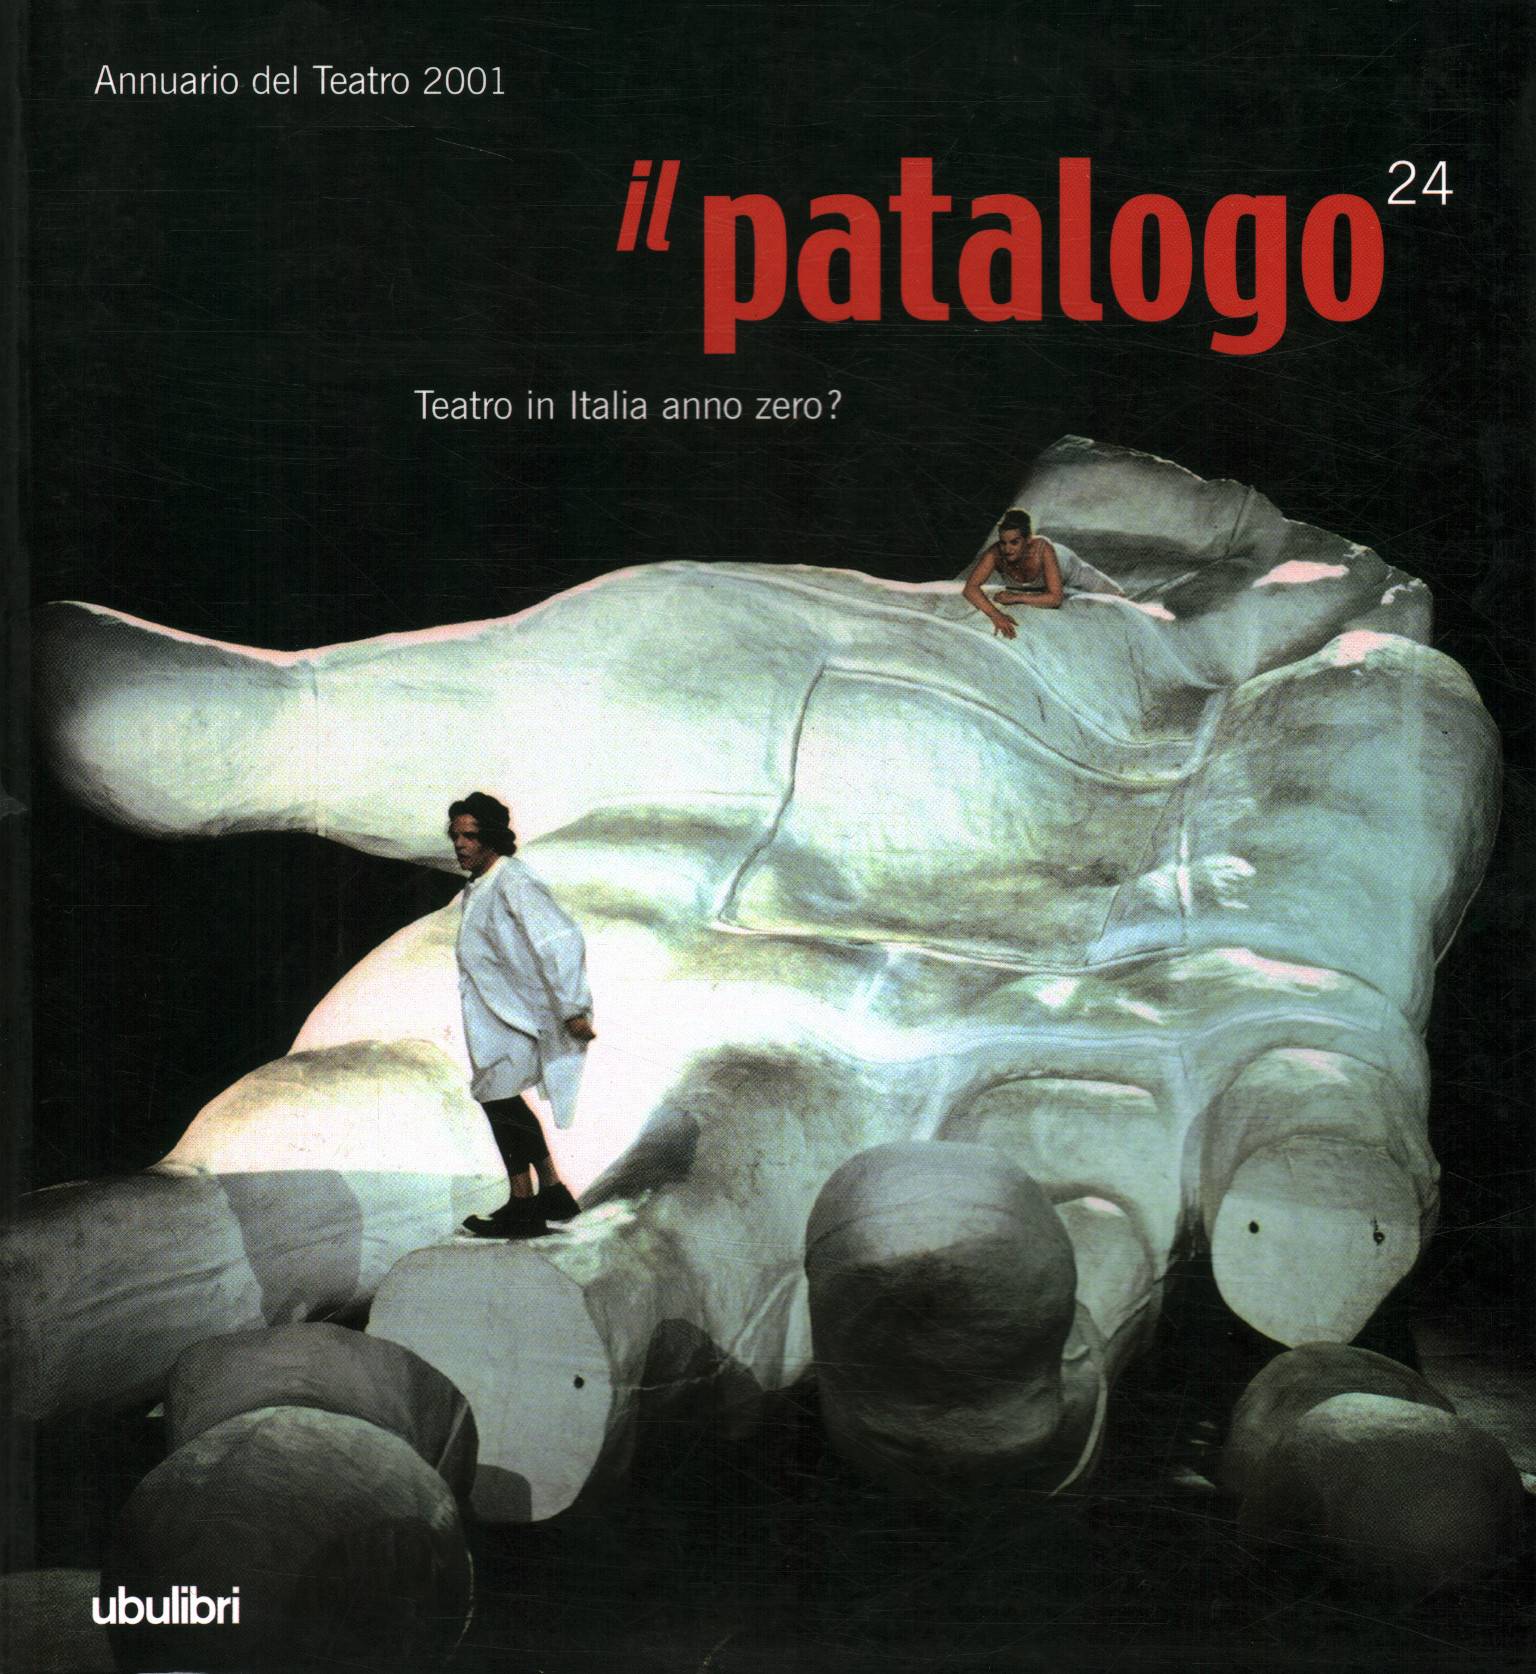 Il Patologo 24. Teatro in Italia anno%,Il Patalogo 24. Teatro in Italia anno%,Il Patalogo ventiquattro. Teatro in Ital